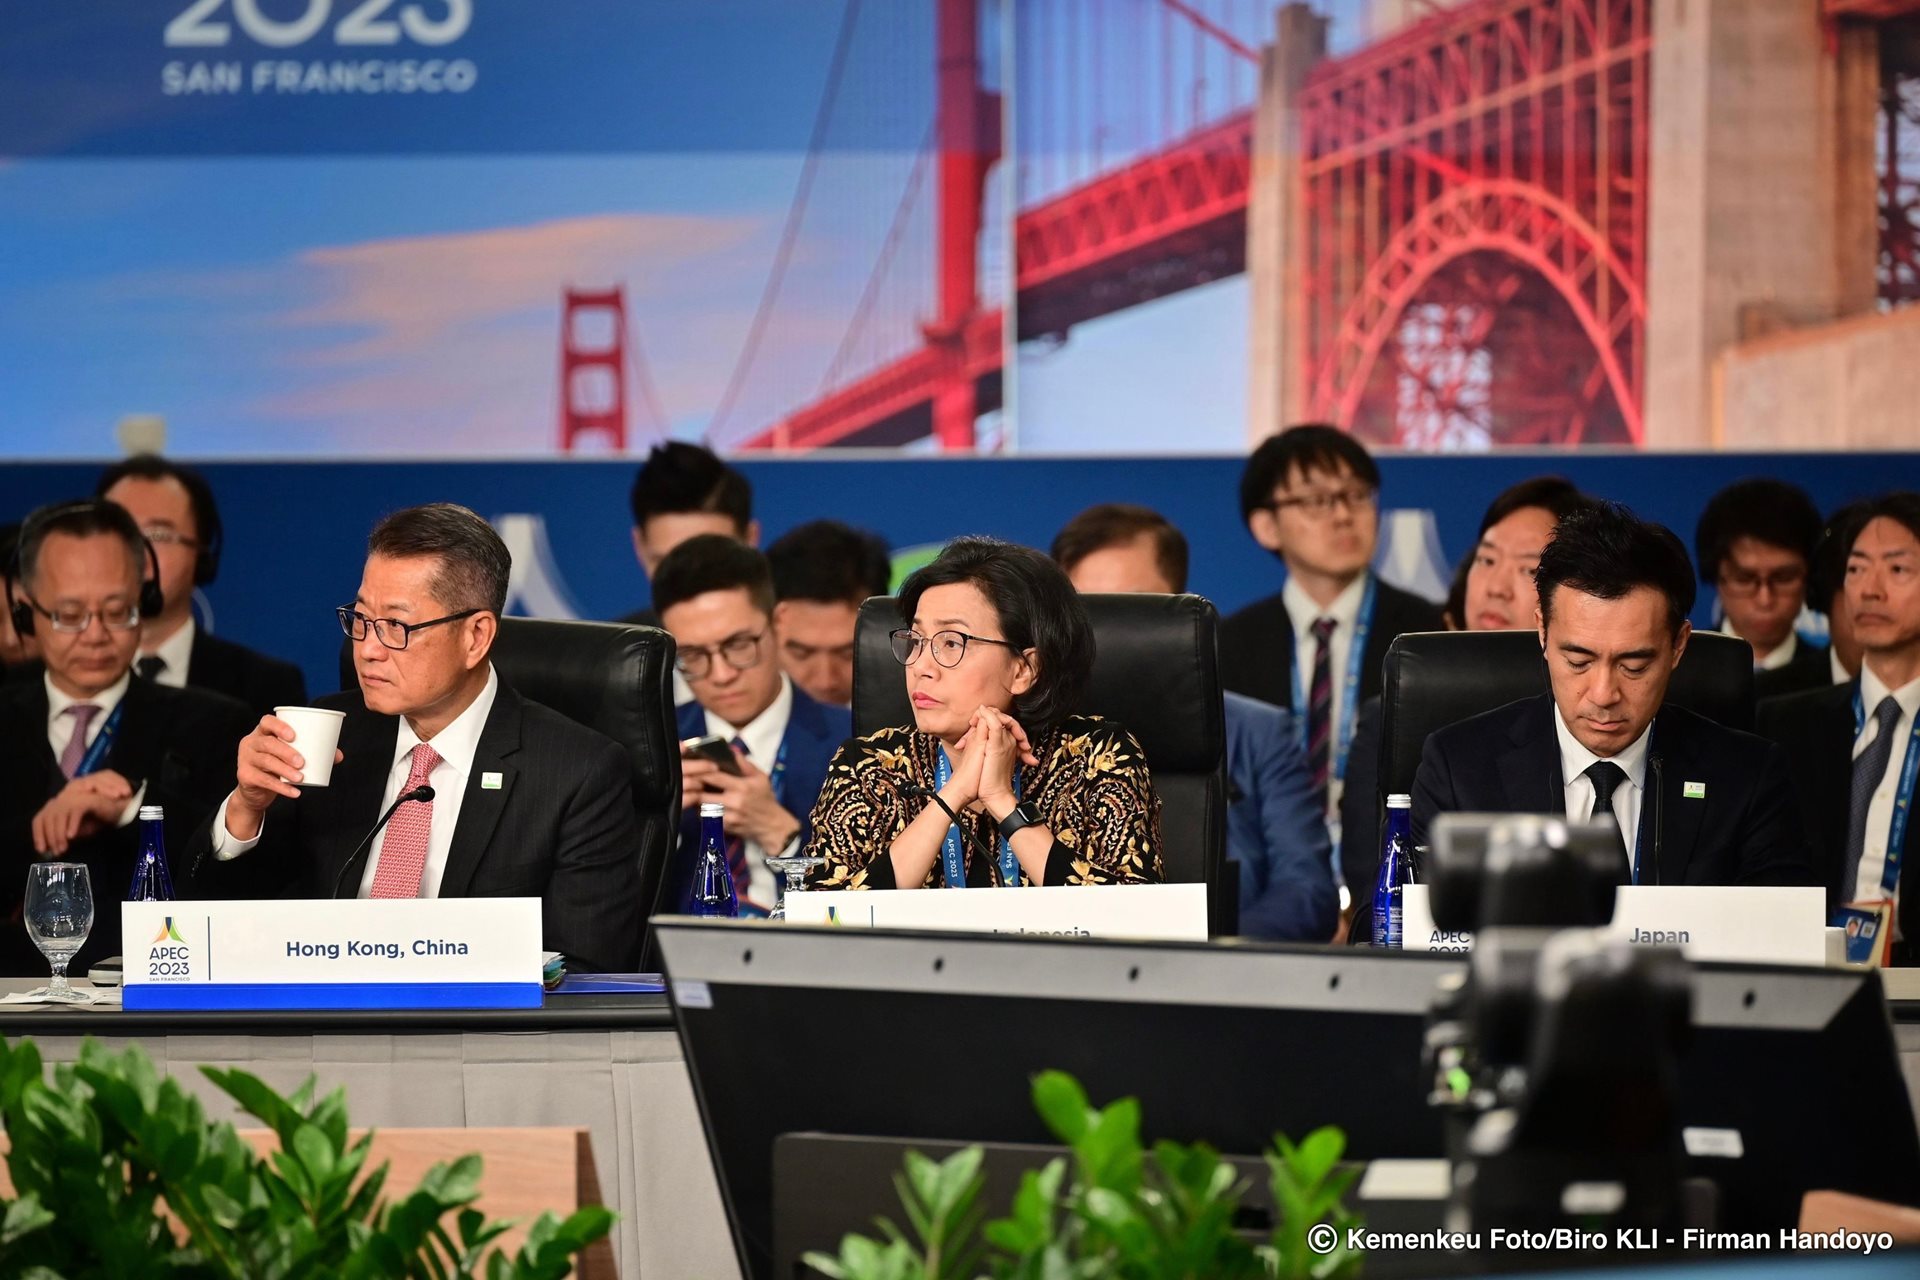 Isu Perubahan Iklim dan Situasi Ekonomi Global Dibahas Serius di Pertemuan APEC